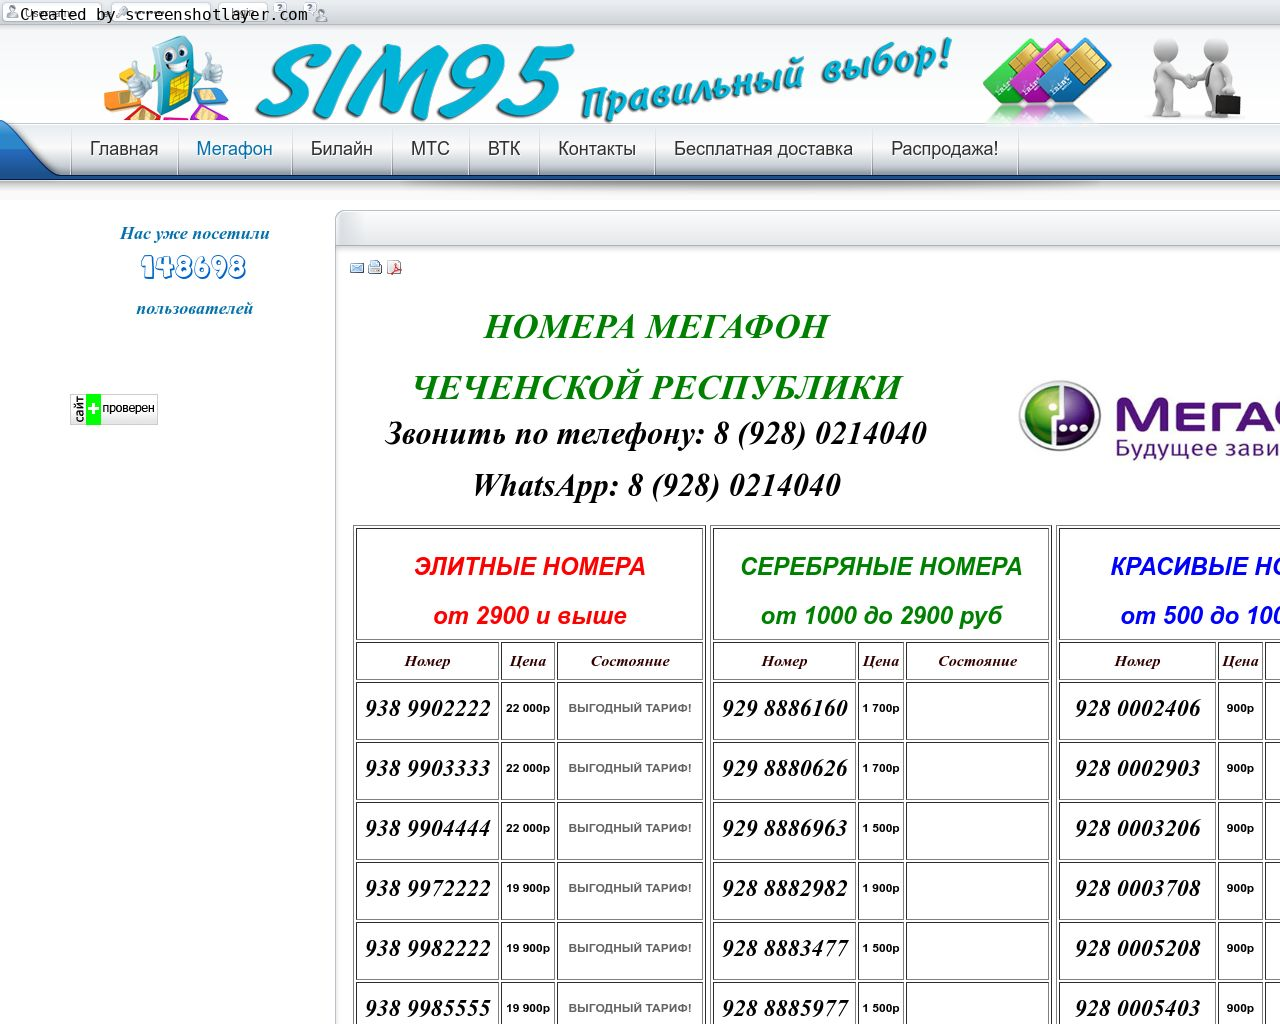 Изображение сайта sim95.ru в разрешении 1280x1024